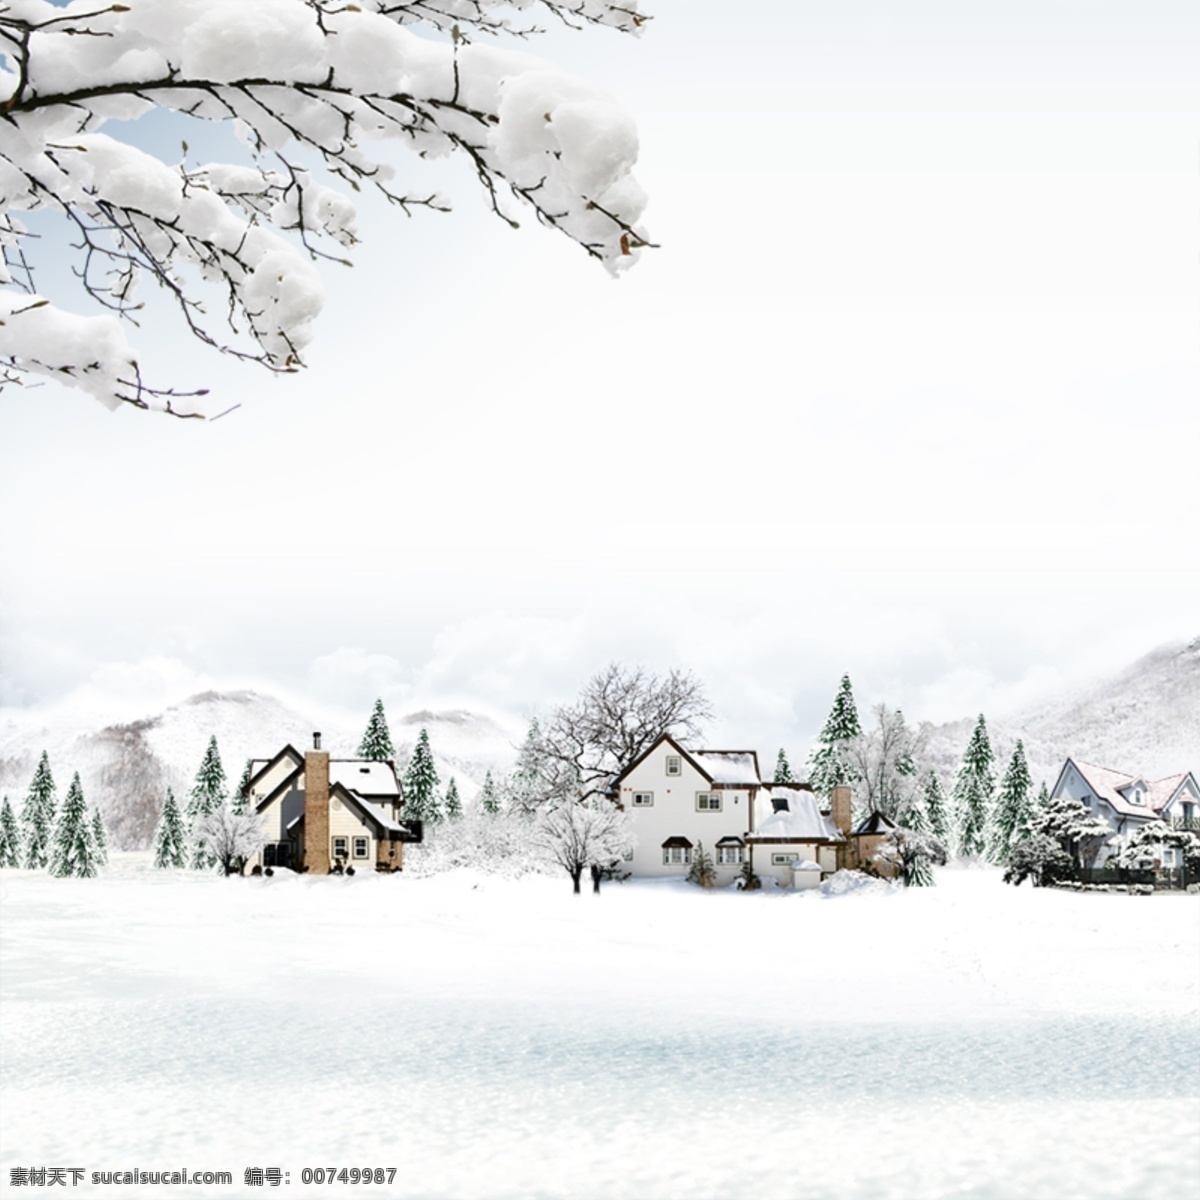 冬季背景 冬季插画 冬天 广告设计模板 源文件 冬季 氛围 模板下载 冬季氛围 写意背景 白色